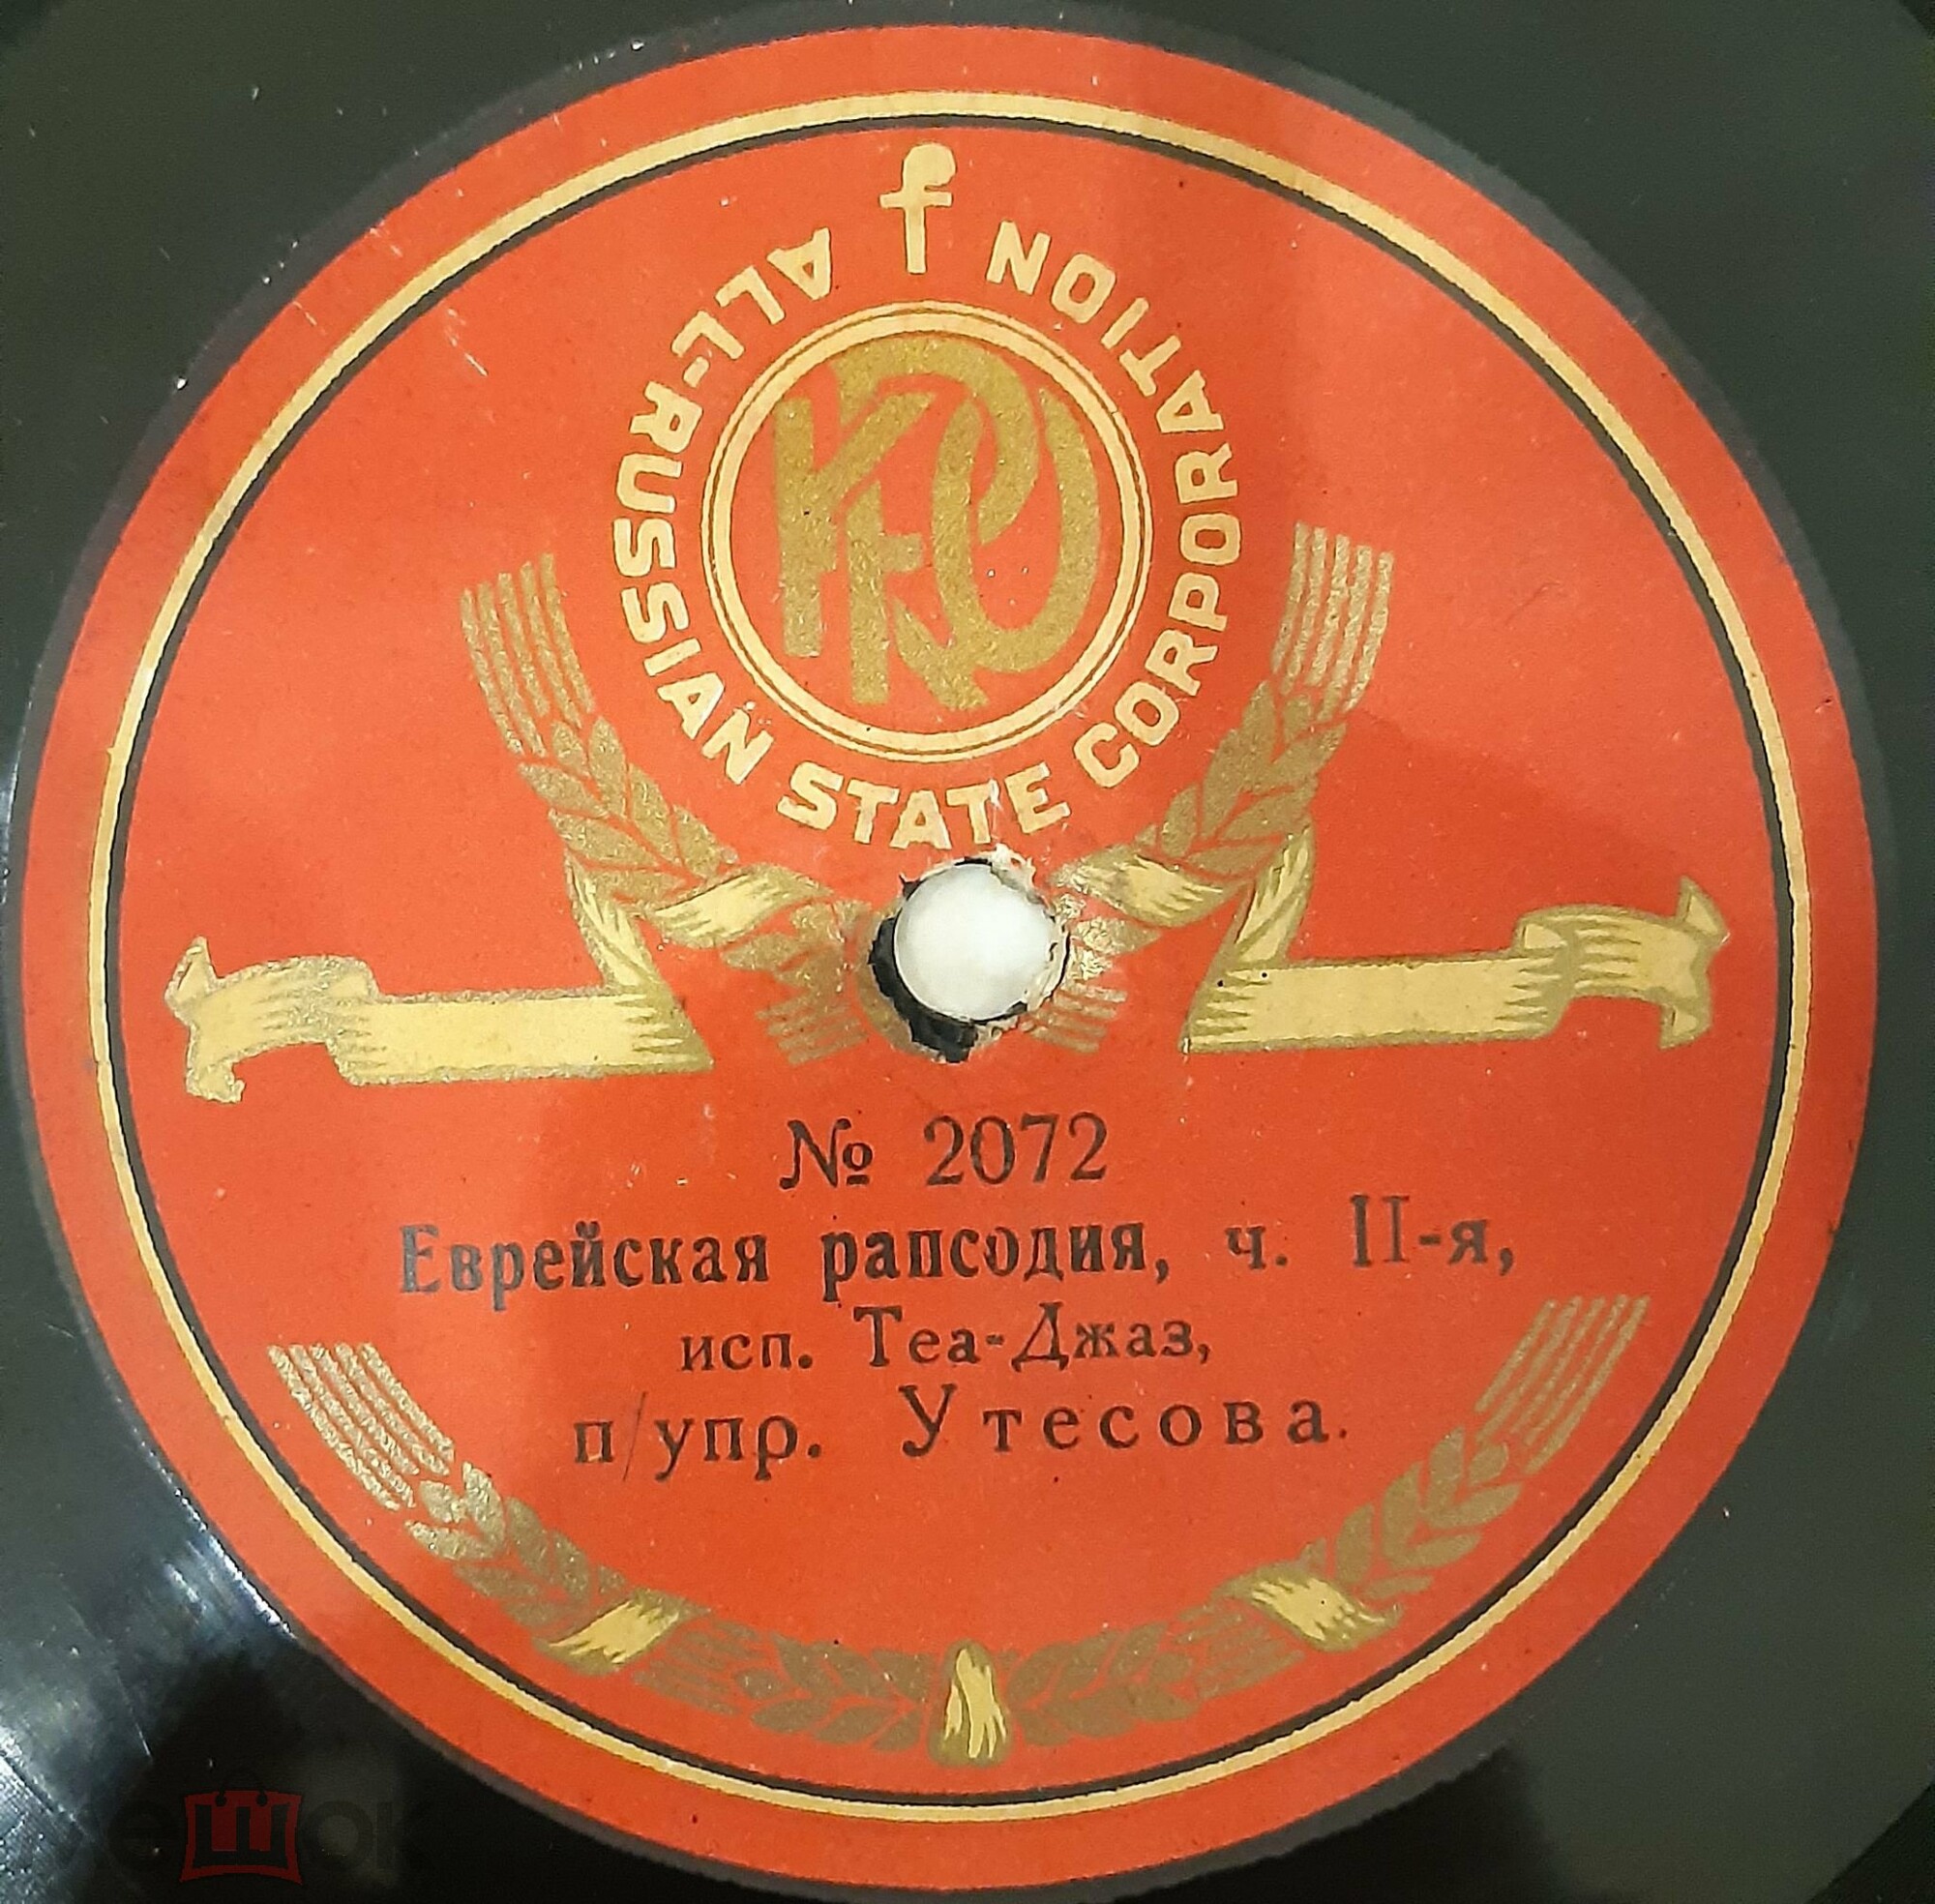 Теа-джаз Леонида Утесова - Еврейская рапсодия